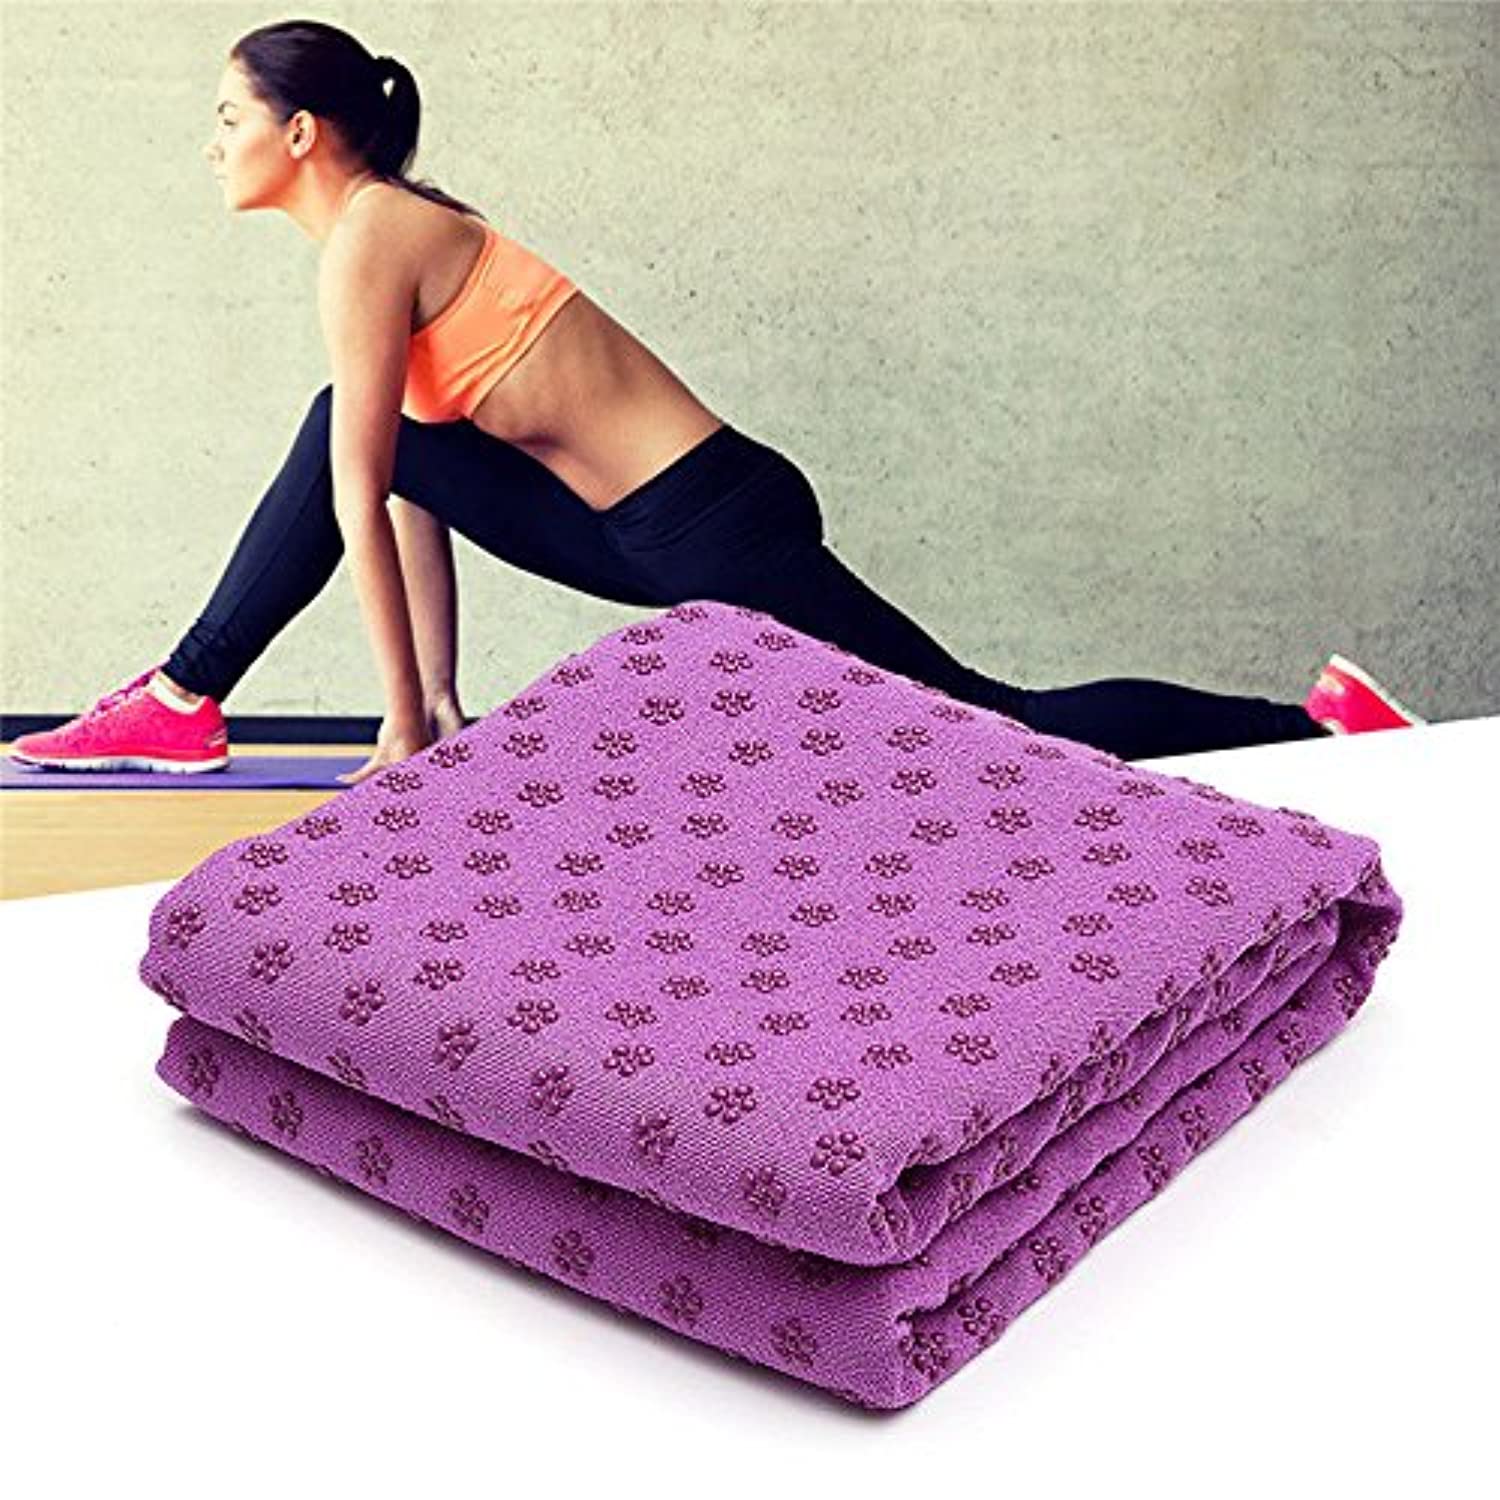 Eunzel Toalla de yoga, toalla para esterilla de yoga caliente, absorbente  del sudor, antideslizante, para yoga caliente, pilates y entrenamiento, 24  x